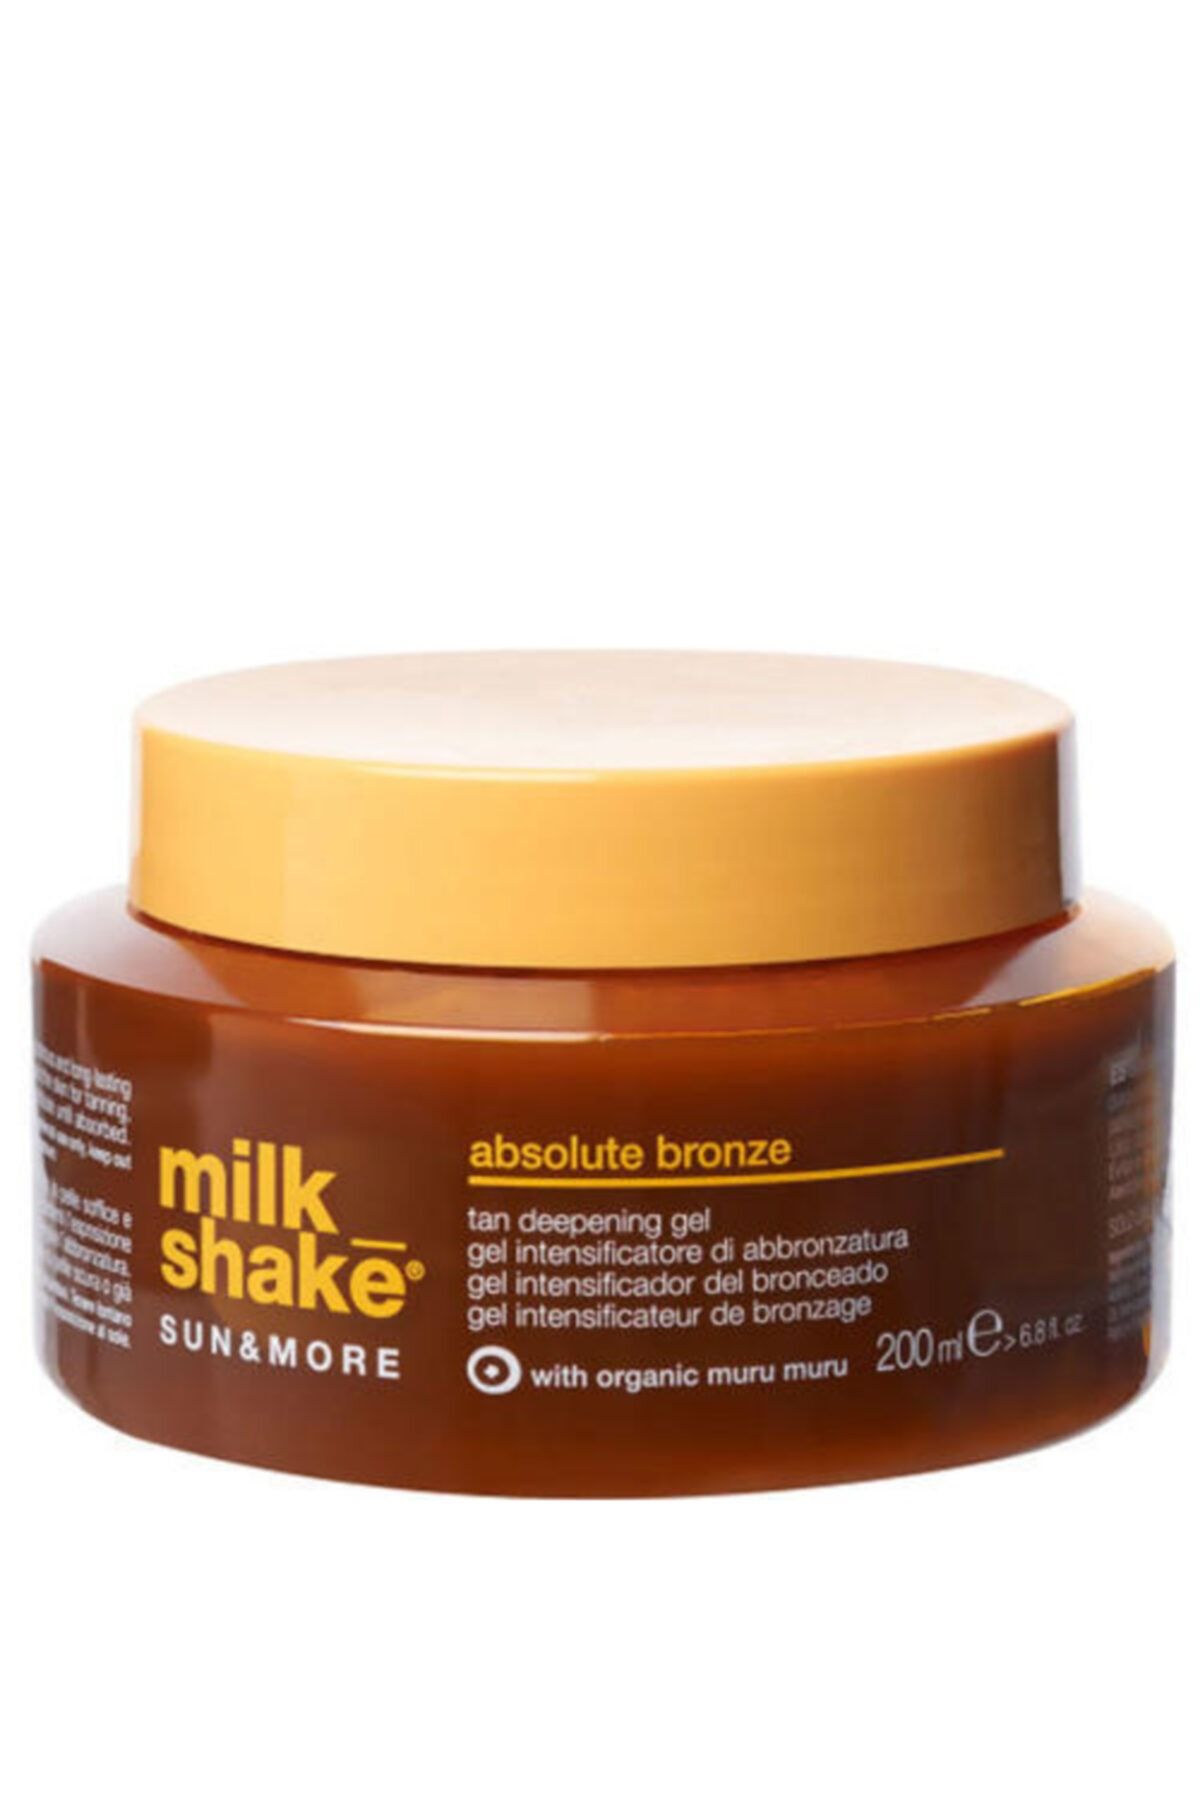 Milkshake Milk Shake Sun&more Absolute Bronze 200ml